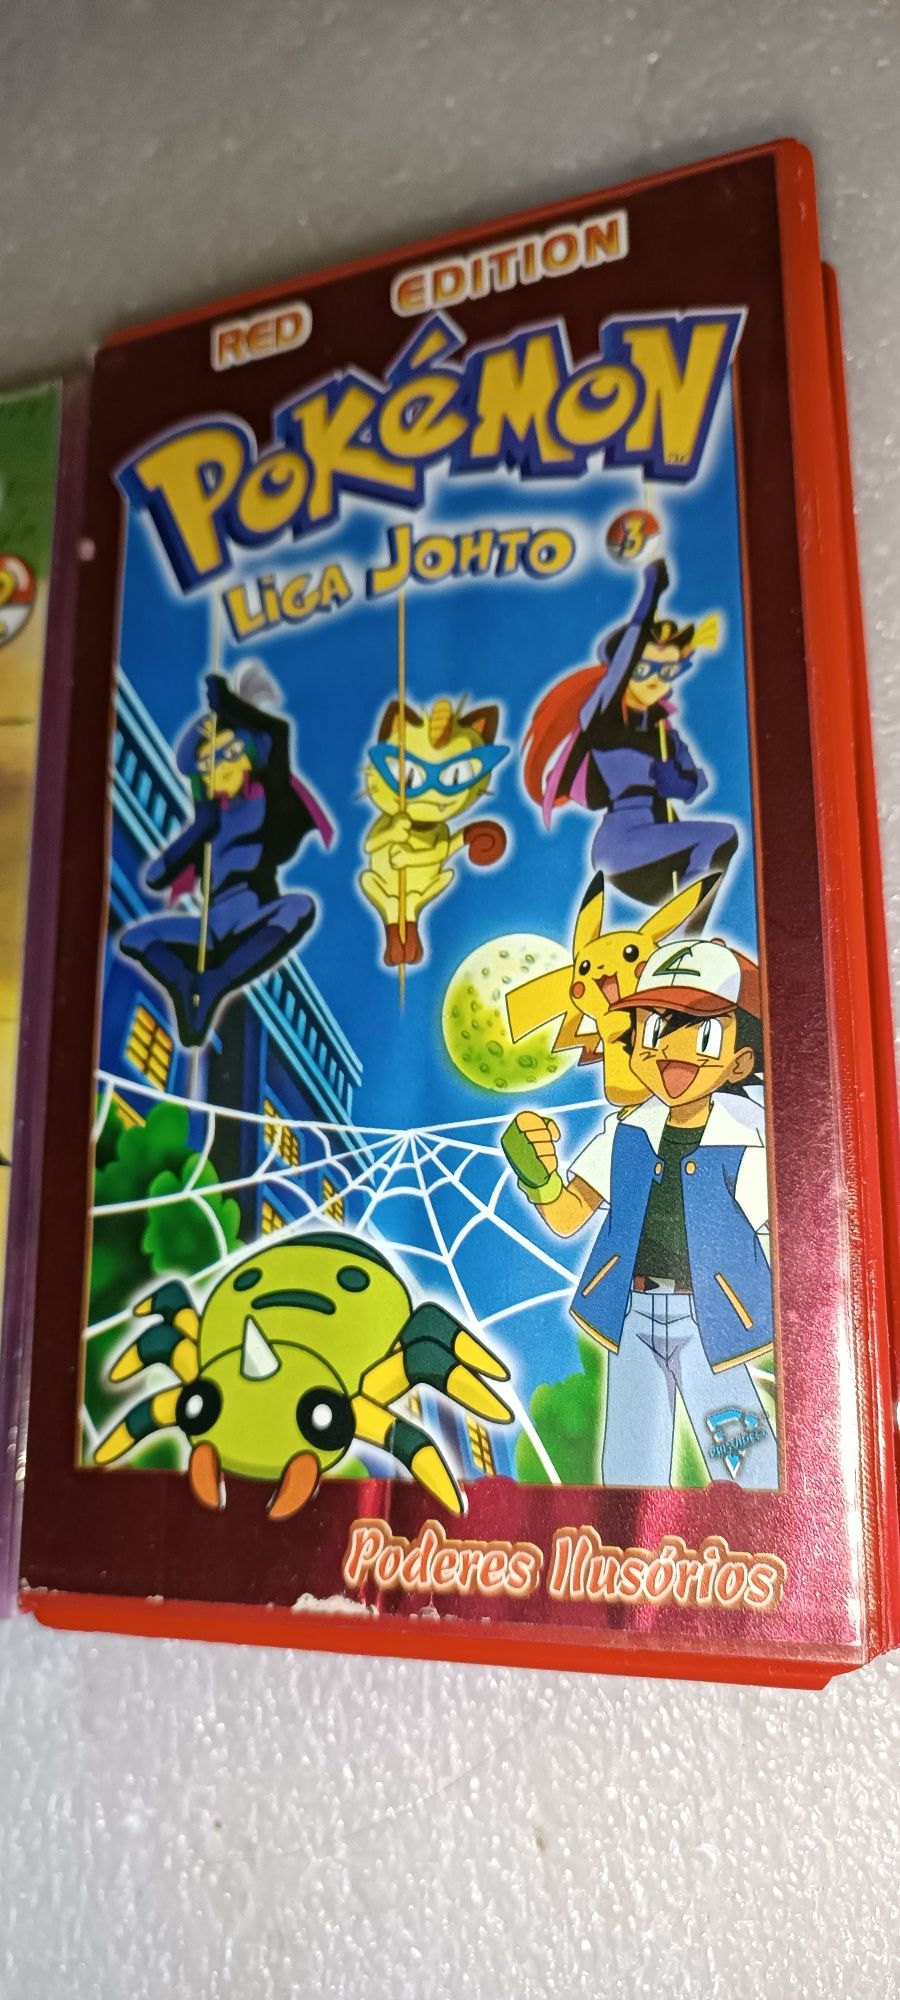 Pokémon 3 Antigas cassetes VHS